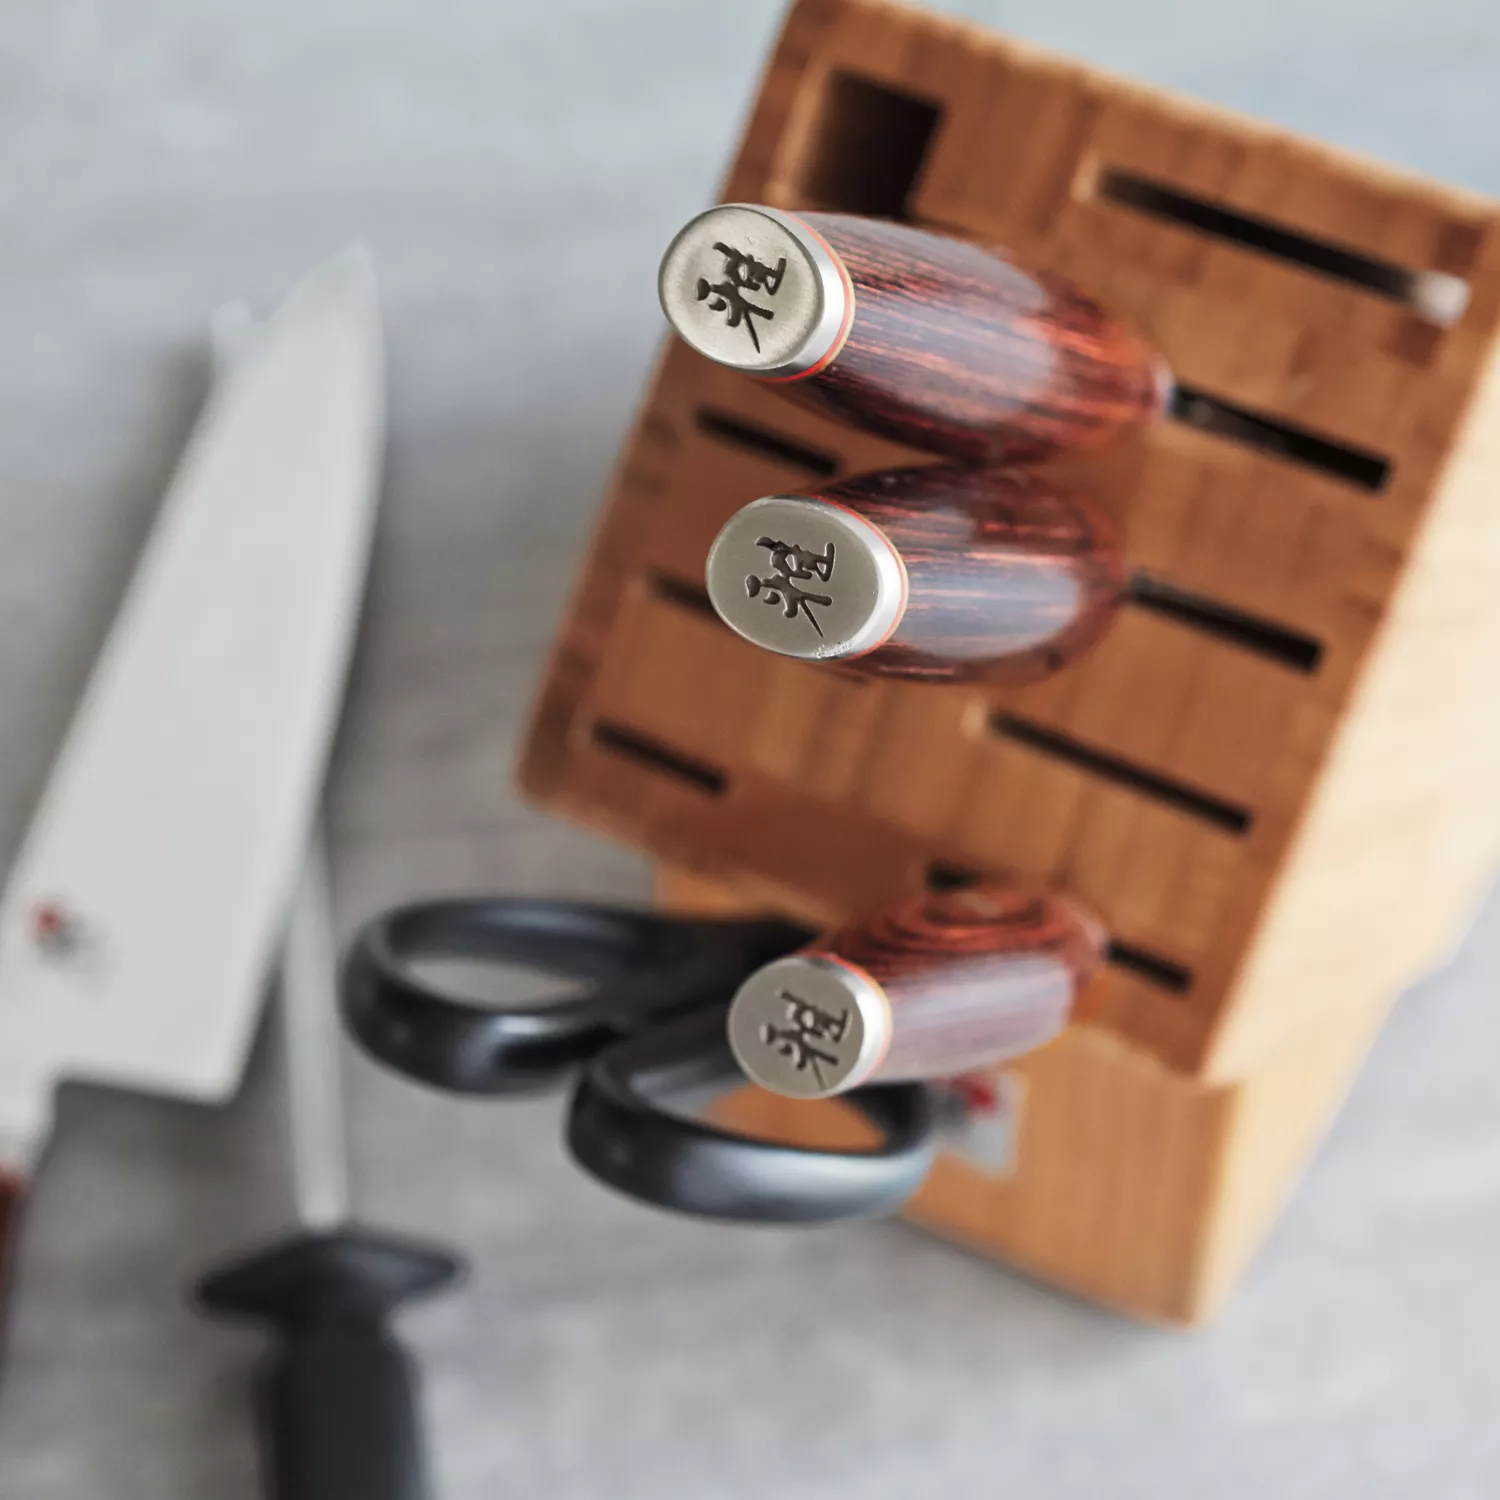 Cutco 19-Piece Kitchen Knife & Block Set with Sharpener